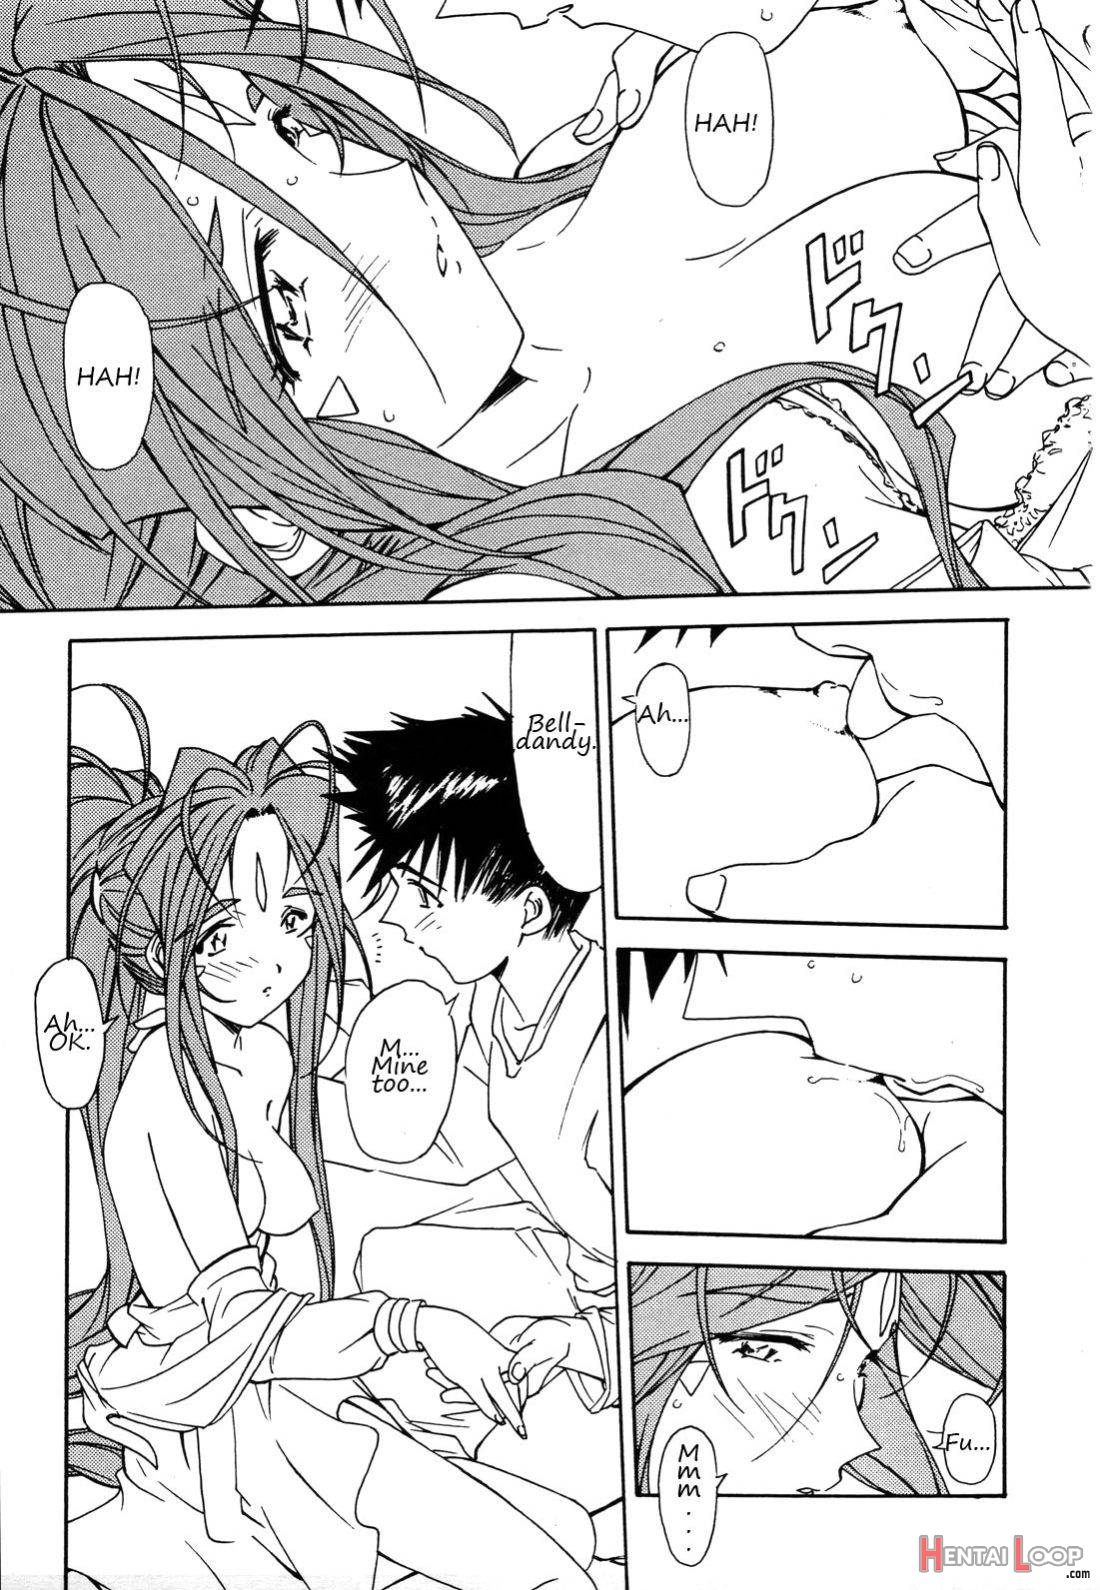 Ohayou Gozaimasu Megami-sama page 6